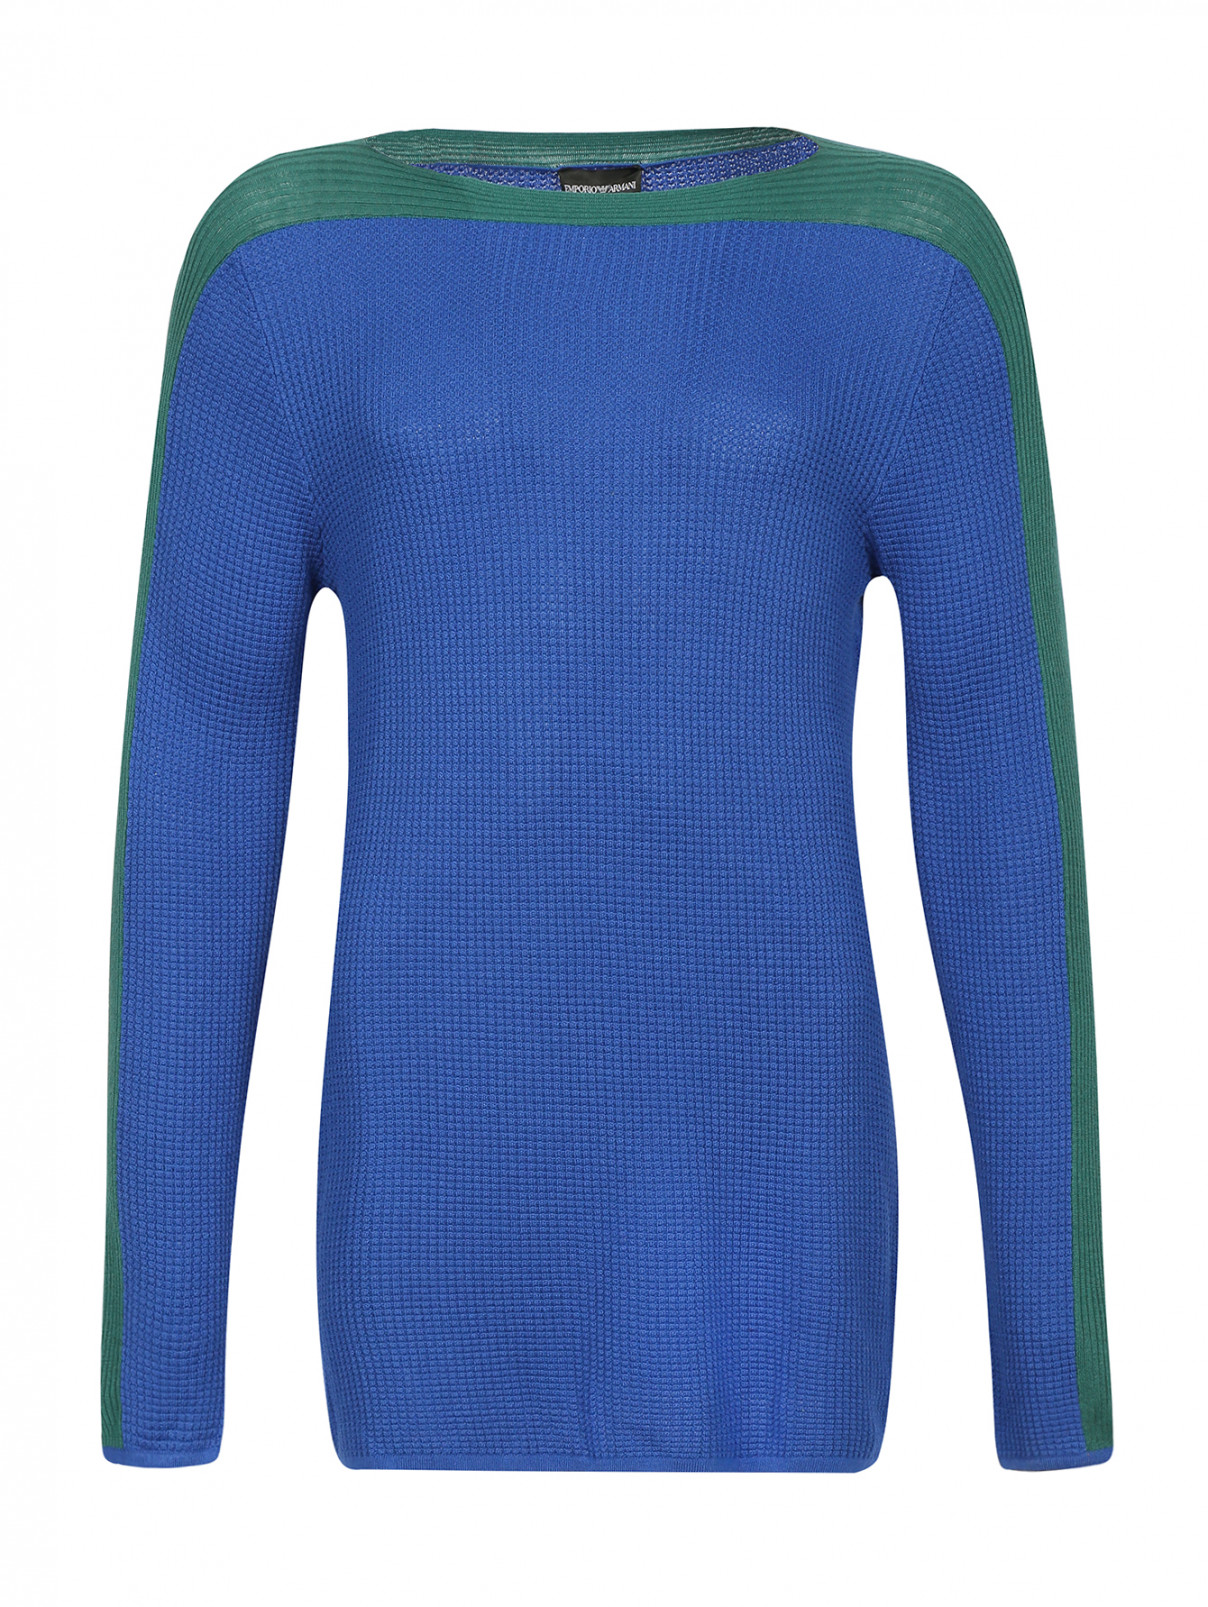 Джемпер из фактурной ткани с контрастной вставкой Emporio Armani  –  Общий вид  – Цвет:  Синий